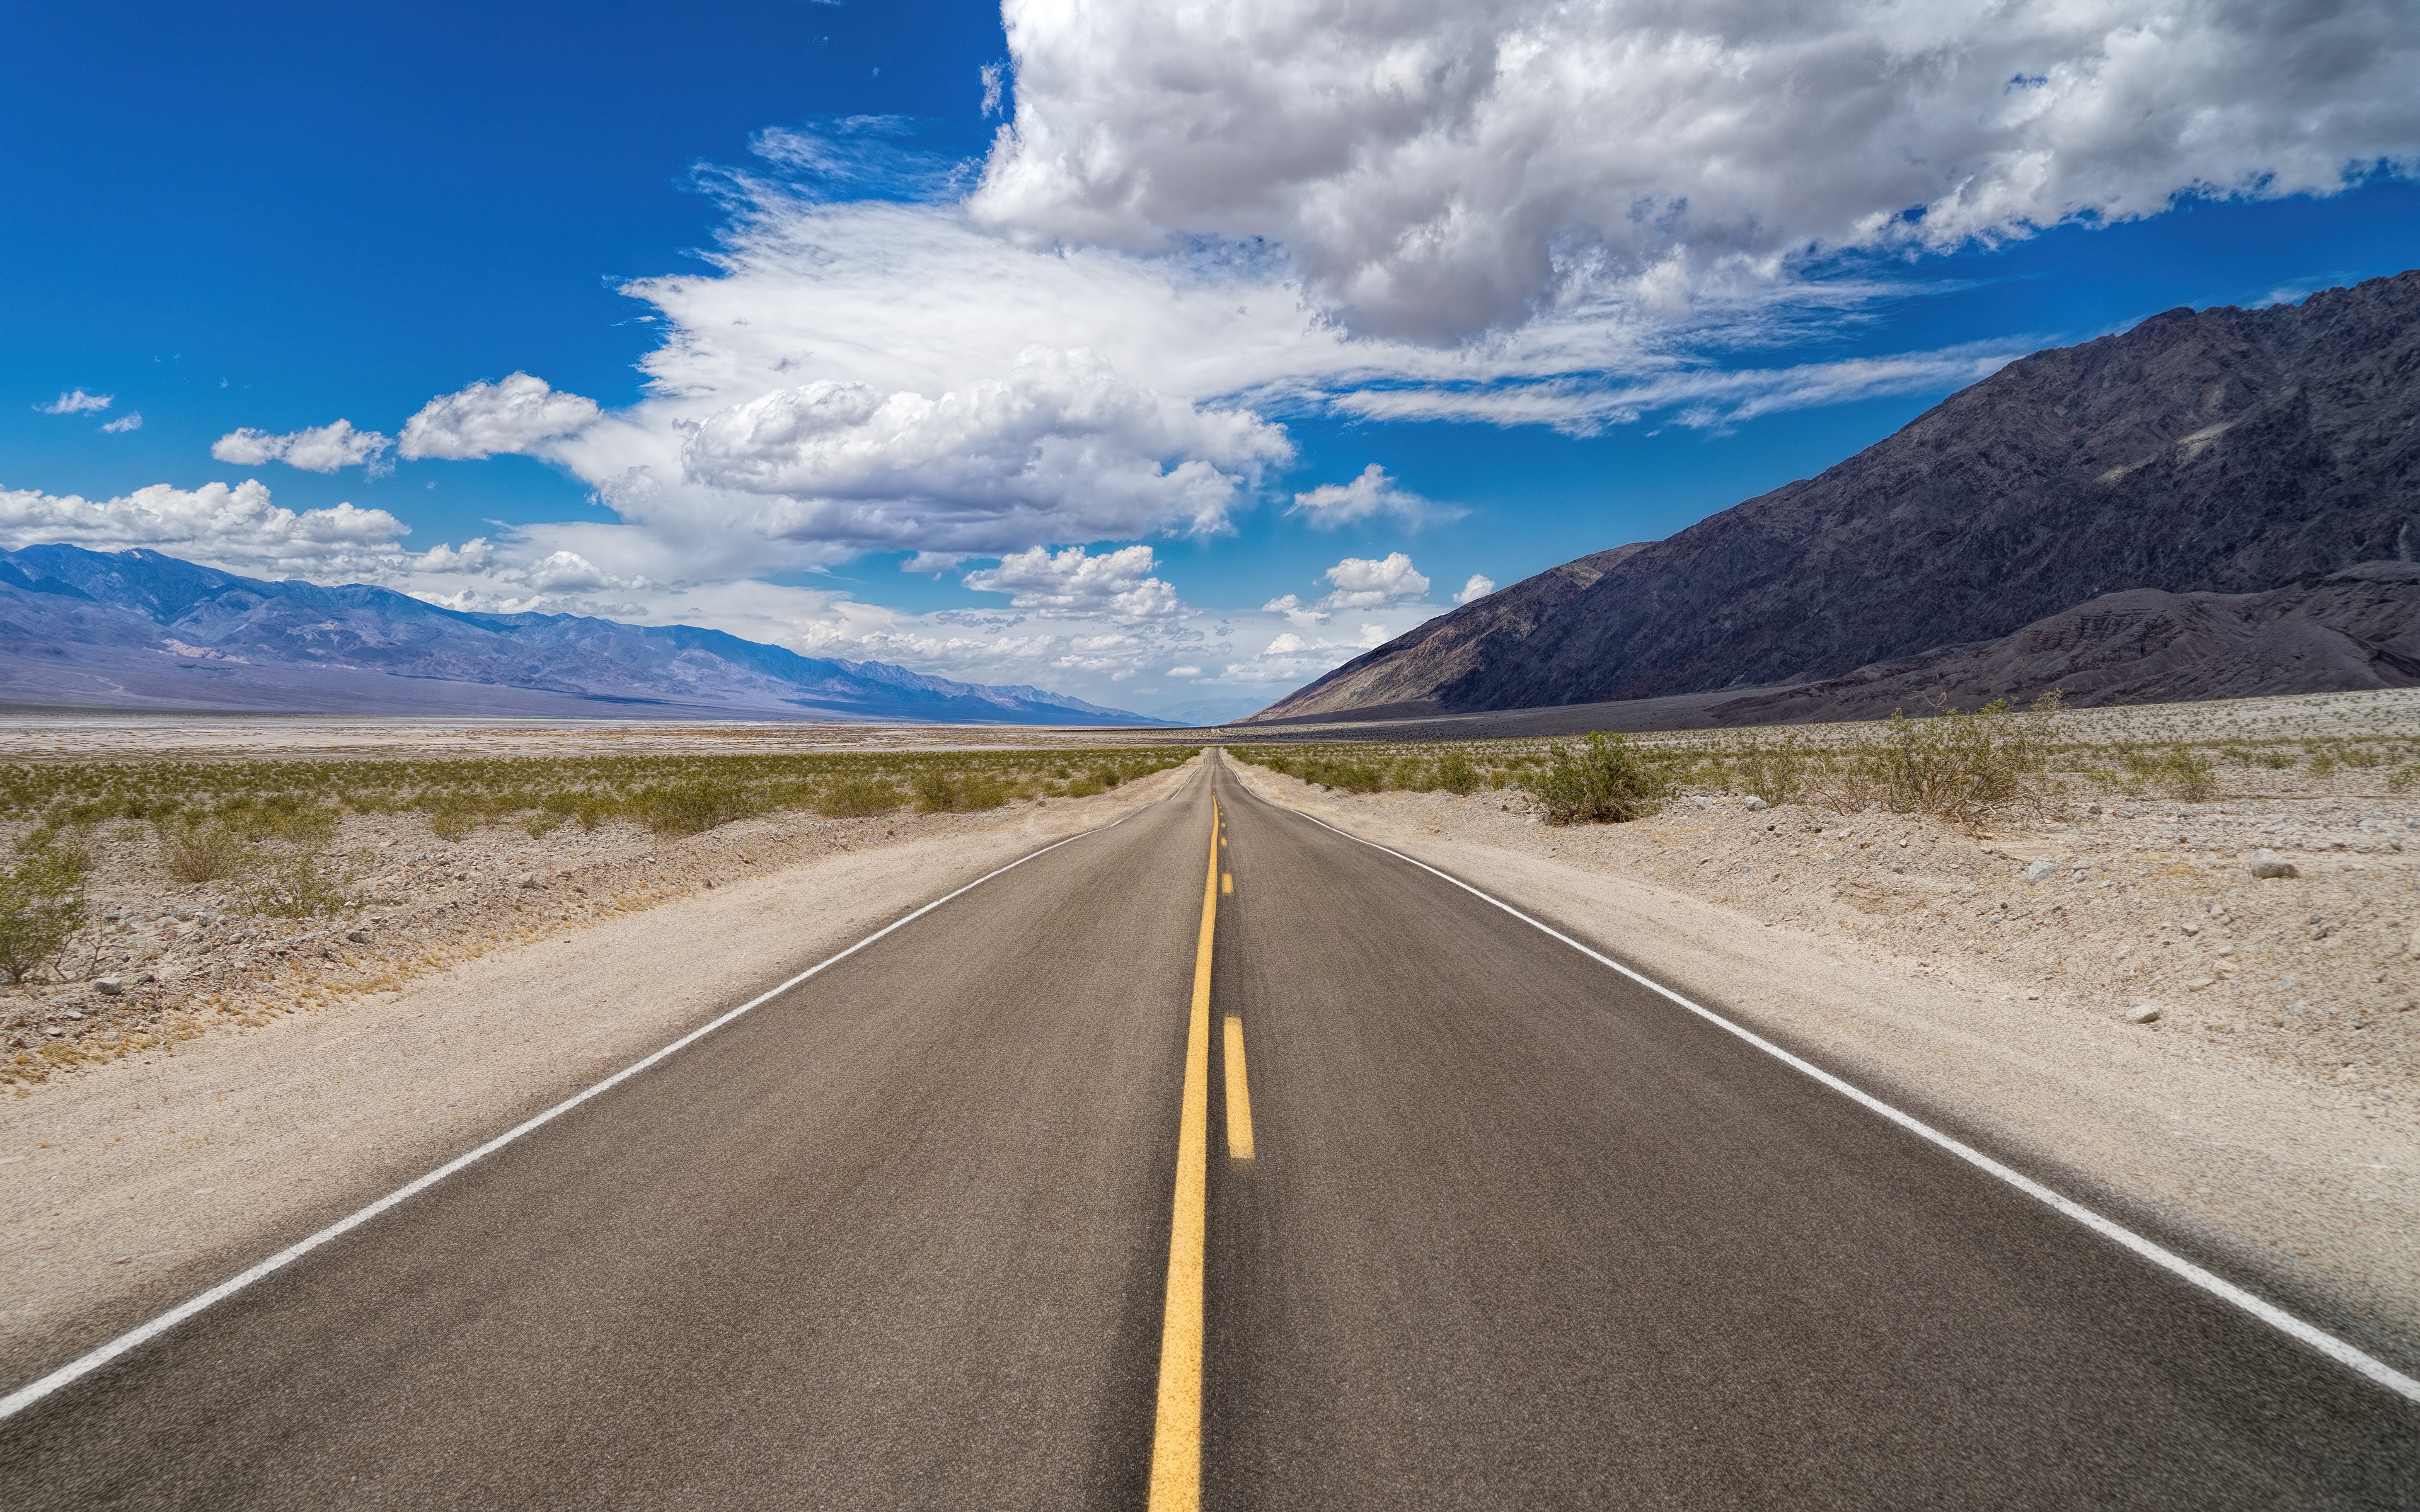 壁紙 3840x2400 アメリカ合衆国 道 空 Death Valley National Park アスファルト カリフォルニア 州 雲 自然 ダウンロード 写真